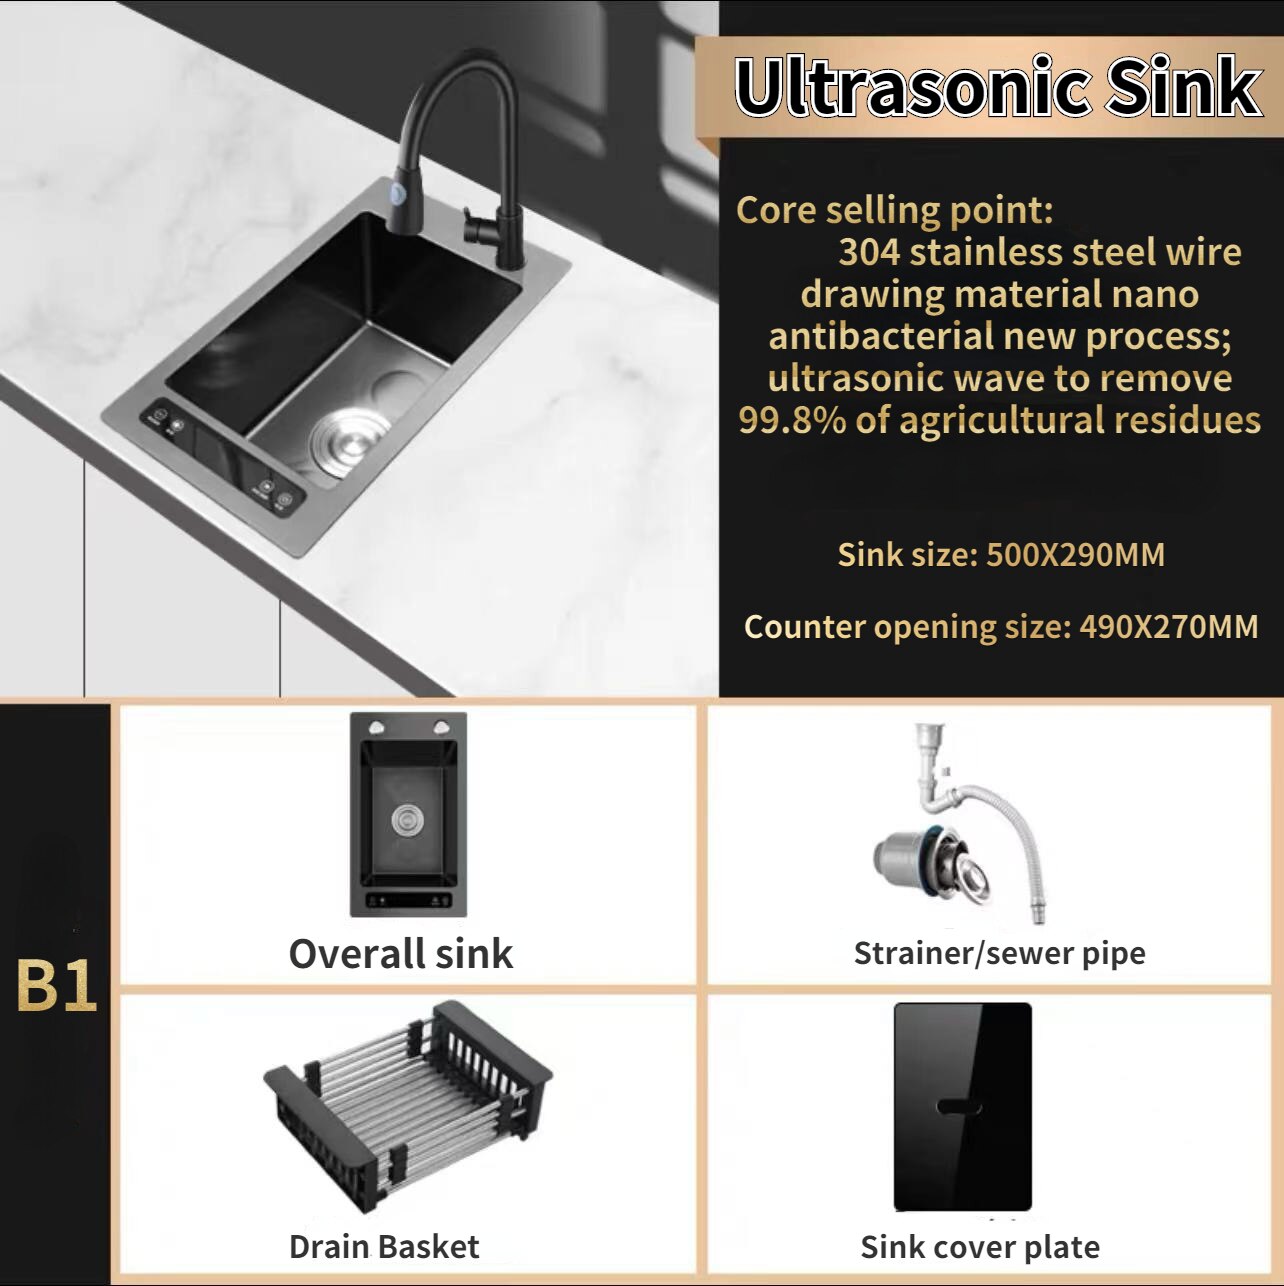 Ultrasonic Sink